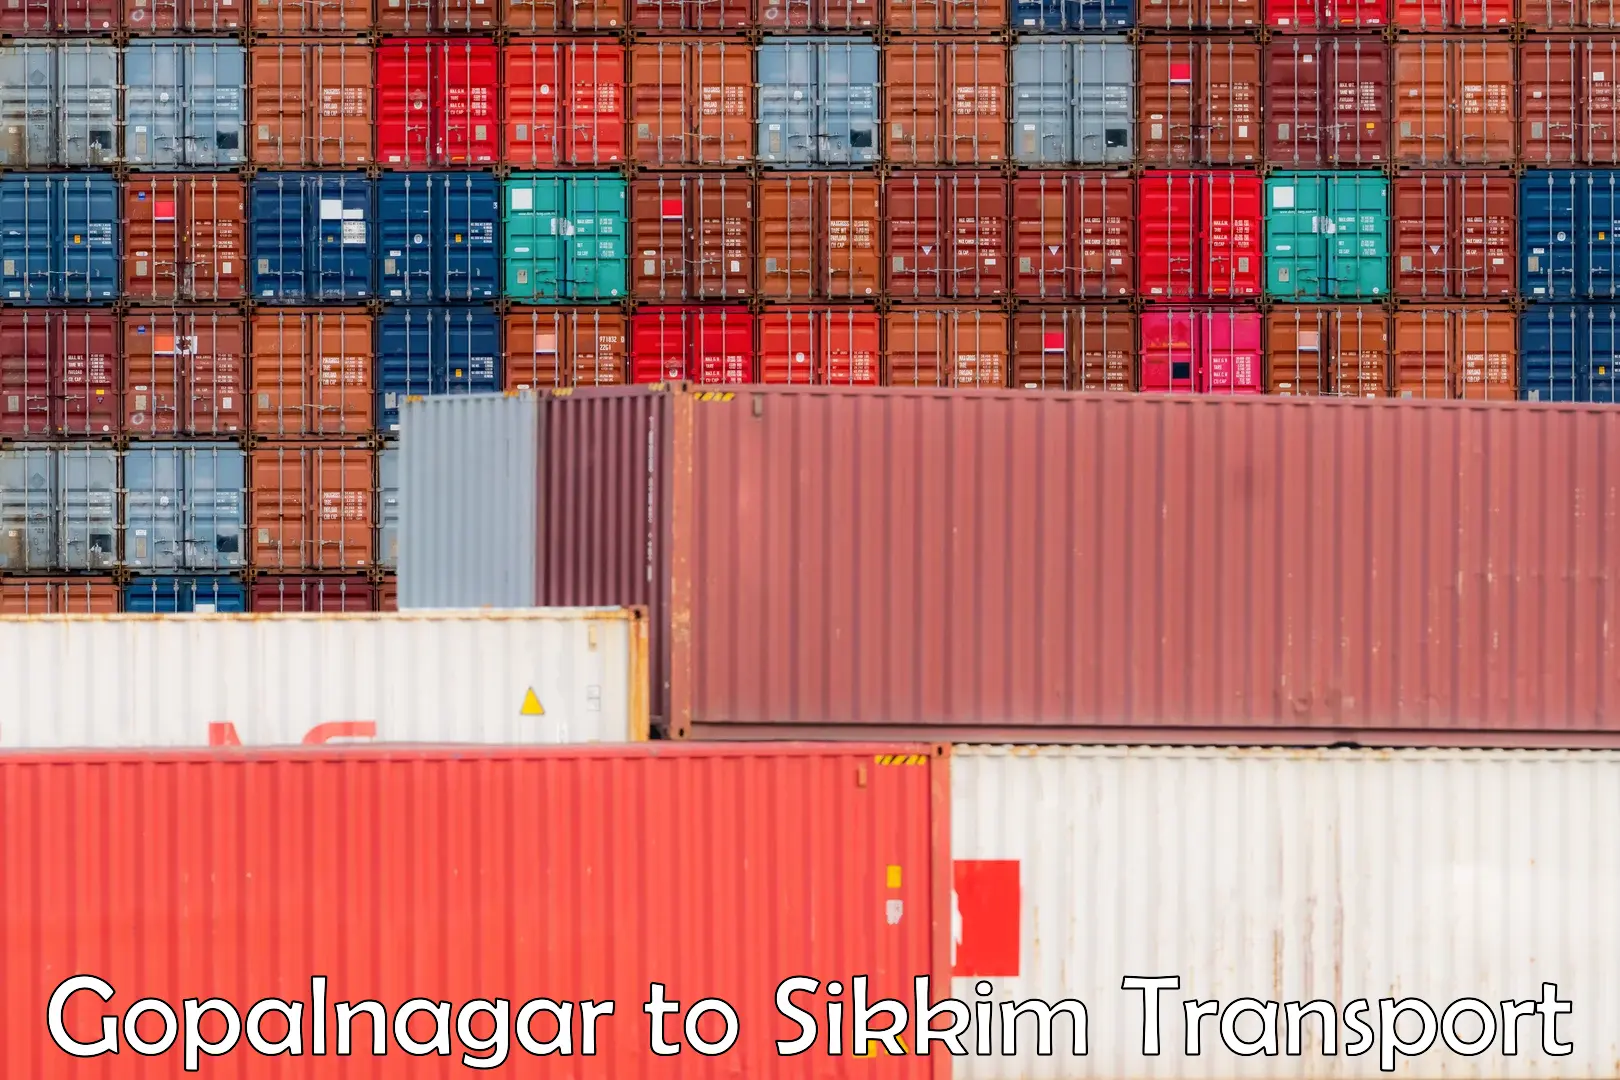 Cargo train transport services Gopalnagar to Singtam